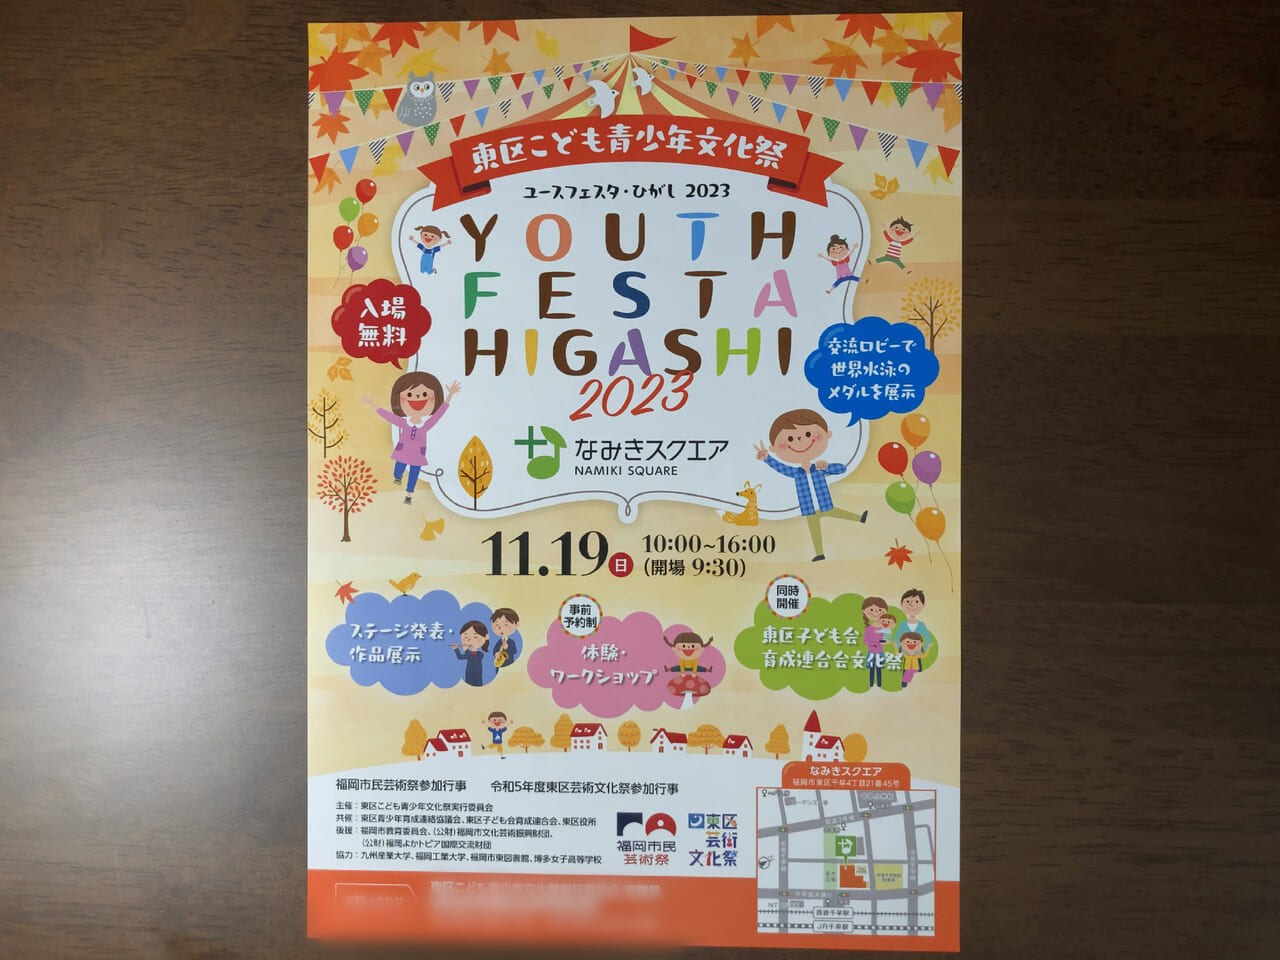 2023年11月19日(日)10:00～16:00（会場9:30）に「なみきスクエア」にて、東区こども青少年文化祭「YOUTH FESTA HIGASHI 2023」が開催予定です。